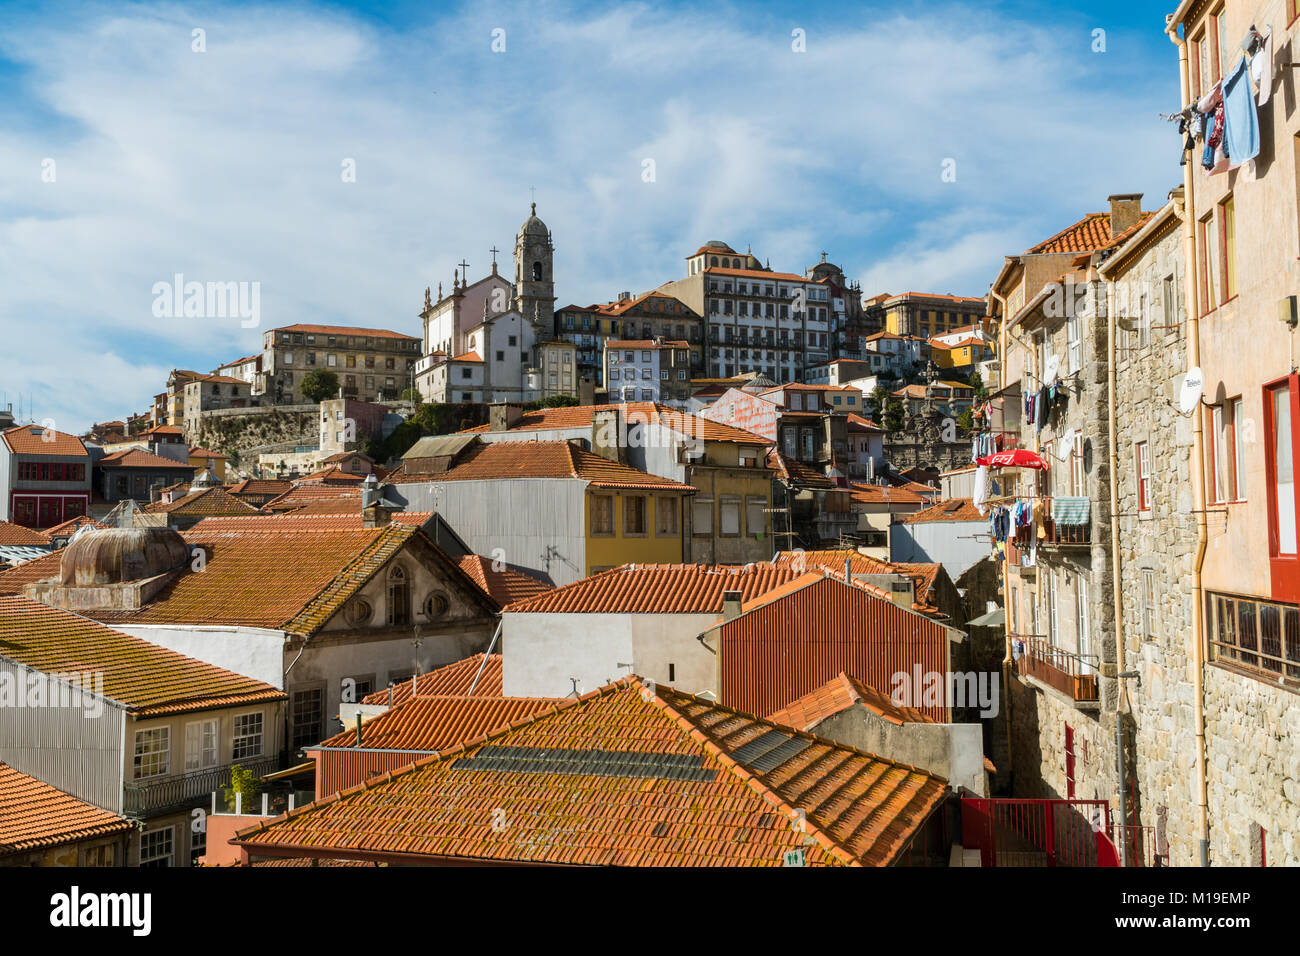 PORTO, PORTUGAL - 31 octobre 2017 : vue sur un toit de tuiles d'argile rouge de Porto, Portugal Banque D'Images